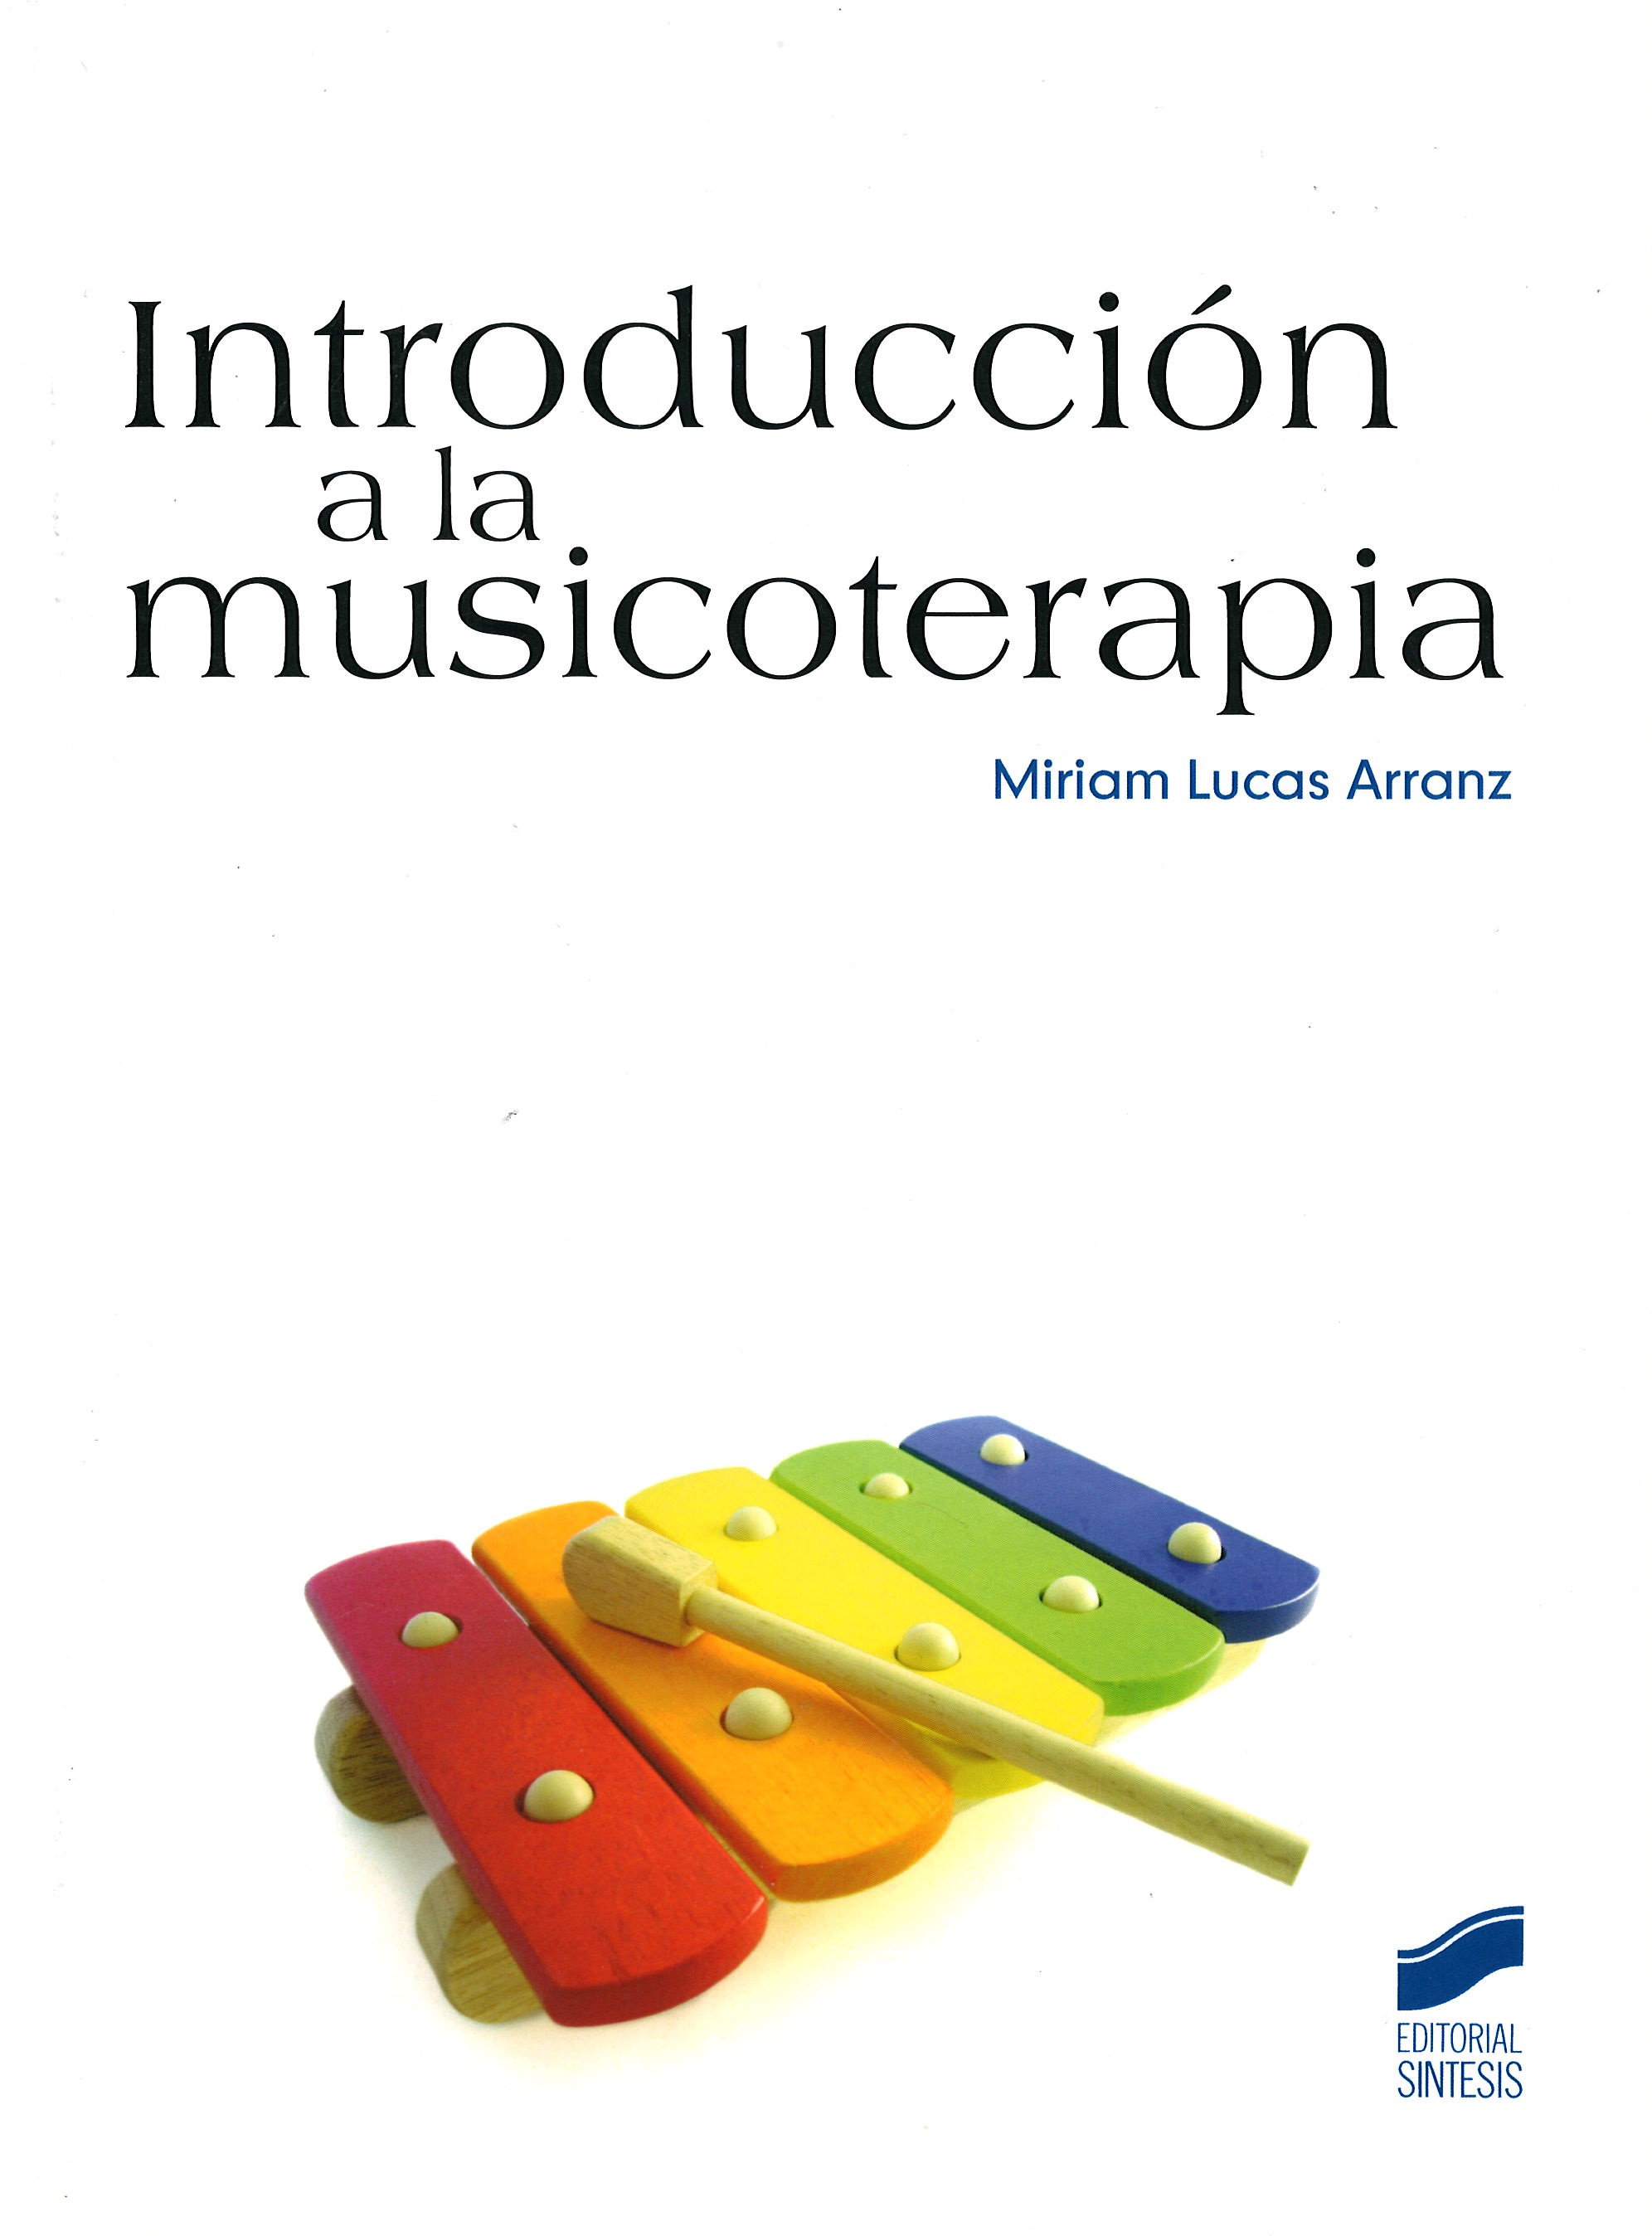 Imagen de portada del libro Introducción a la musicoterapia